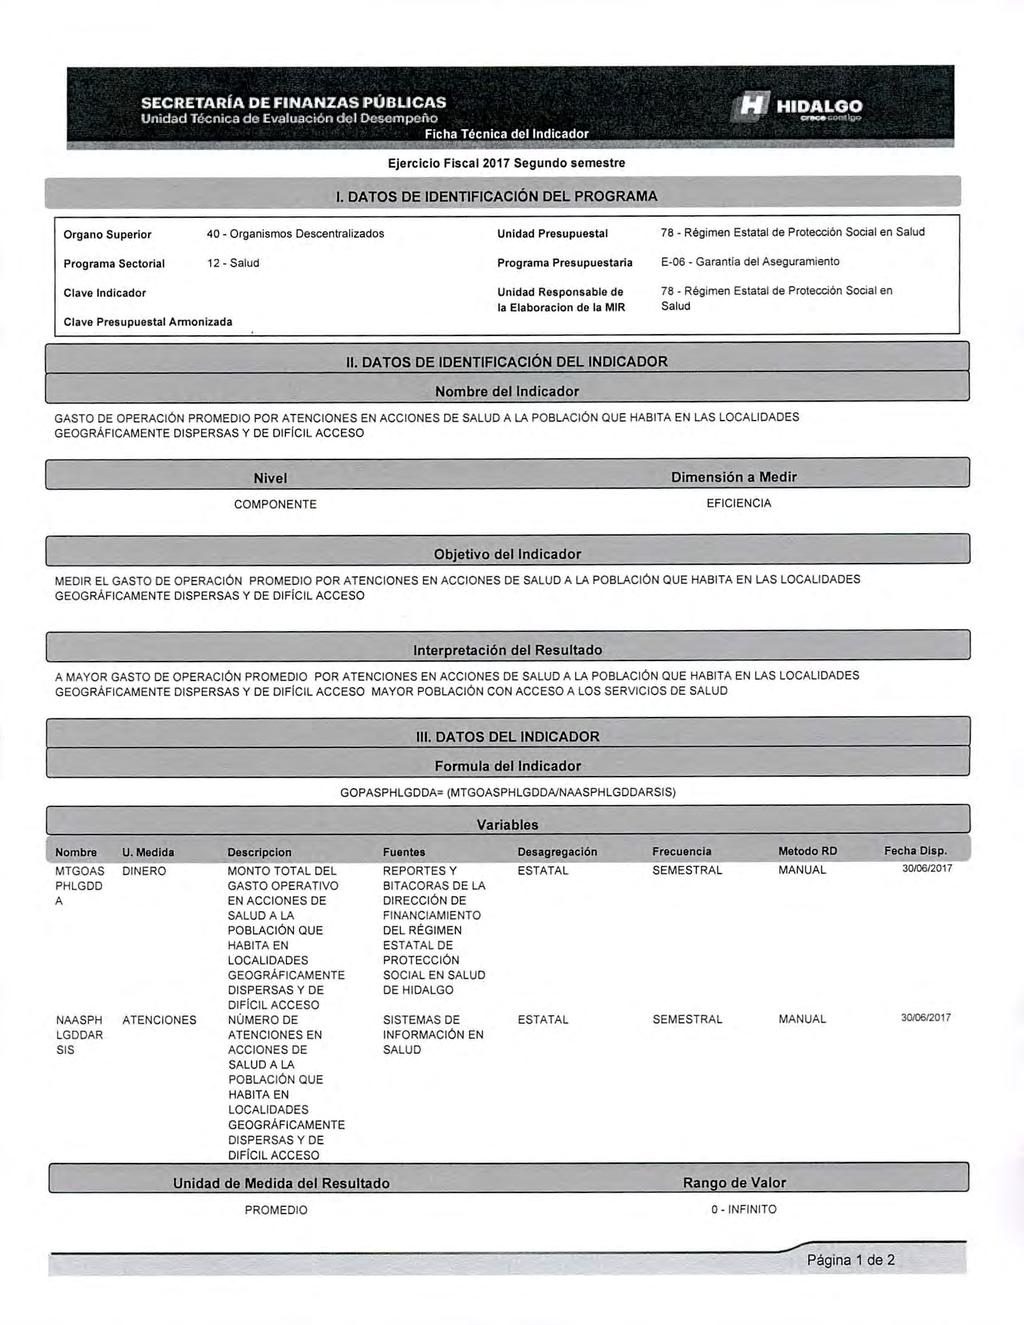 SECRETARÍA DE FINANZAS PÚBLICAS Unidad Tócnica de Evaluación del Pesennenu 14 HIDALGO ~1111.